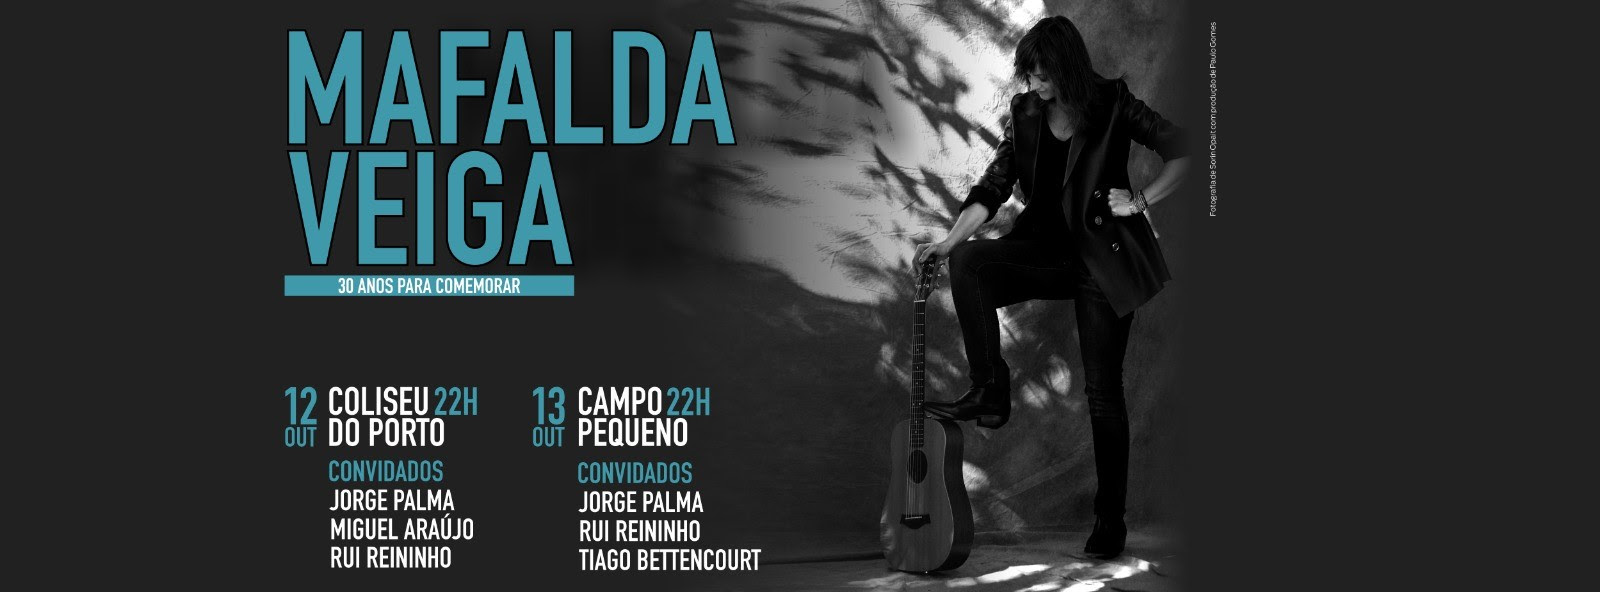 Mafalda Veiga - 30 anos de carreira - concertos